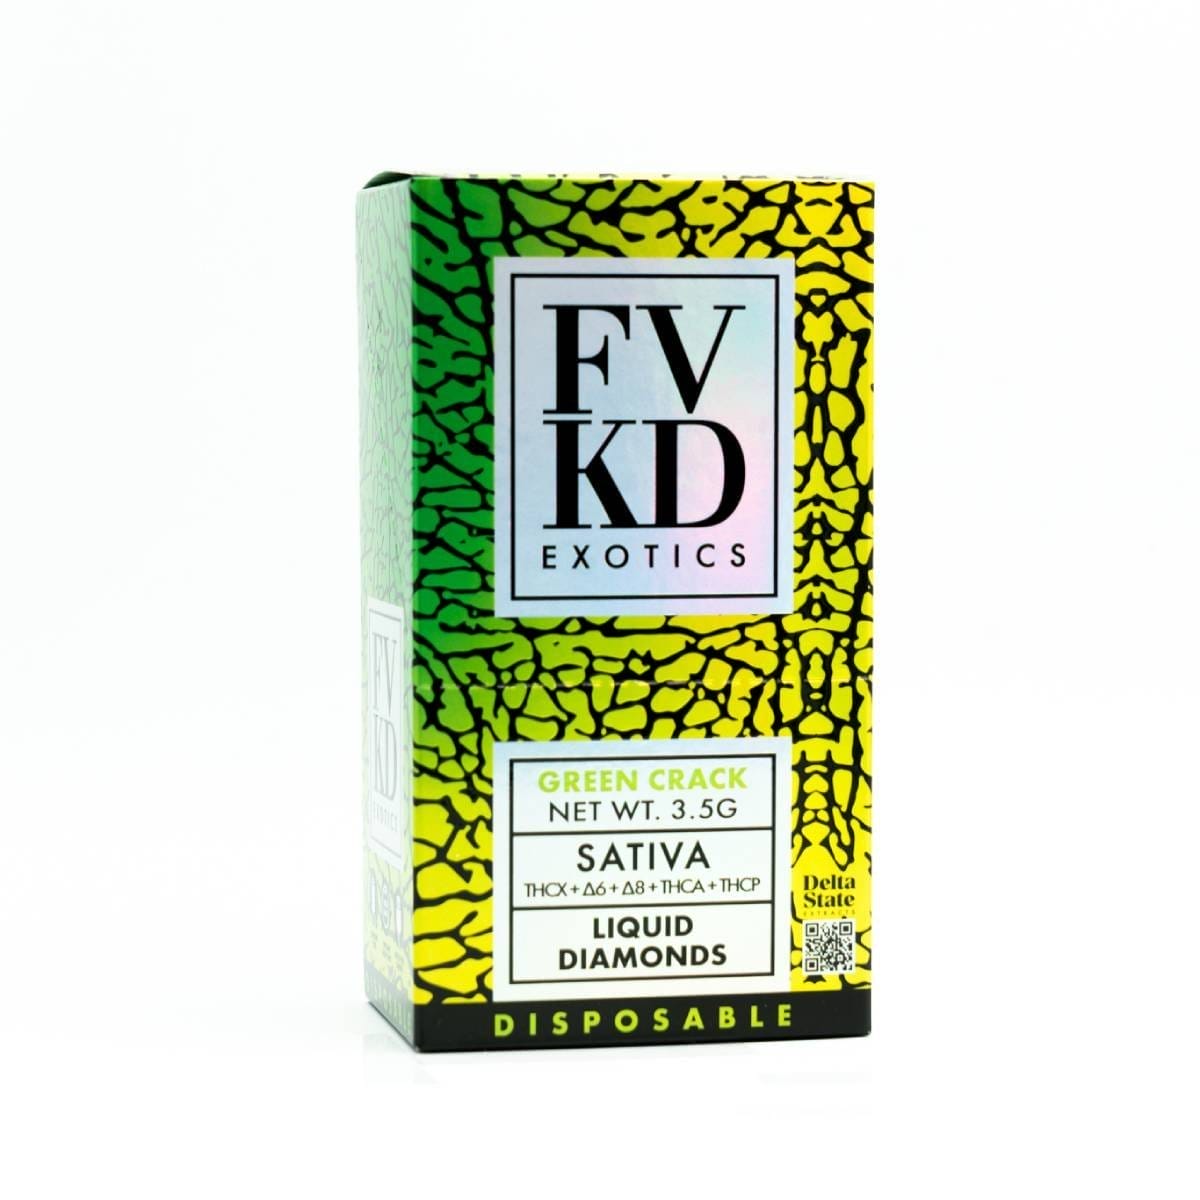 Image of FVKD Exotics Liquid Diamonds Disposables 3.5g - Green Crack